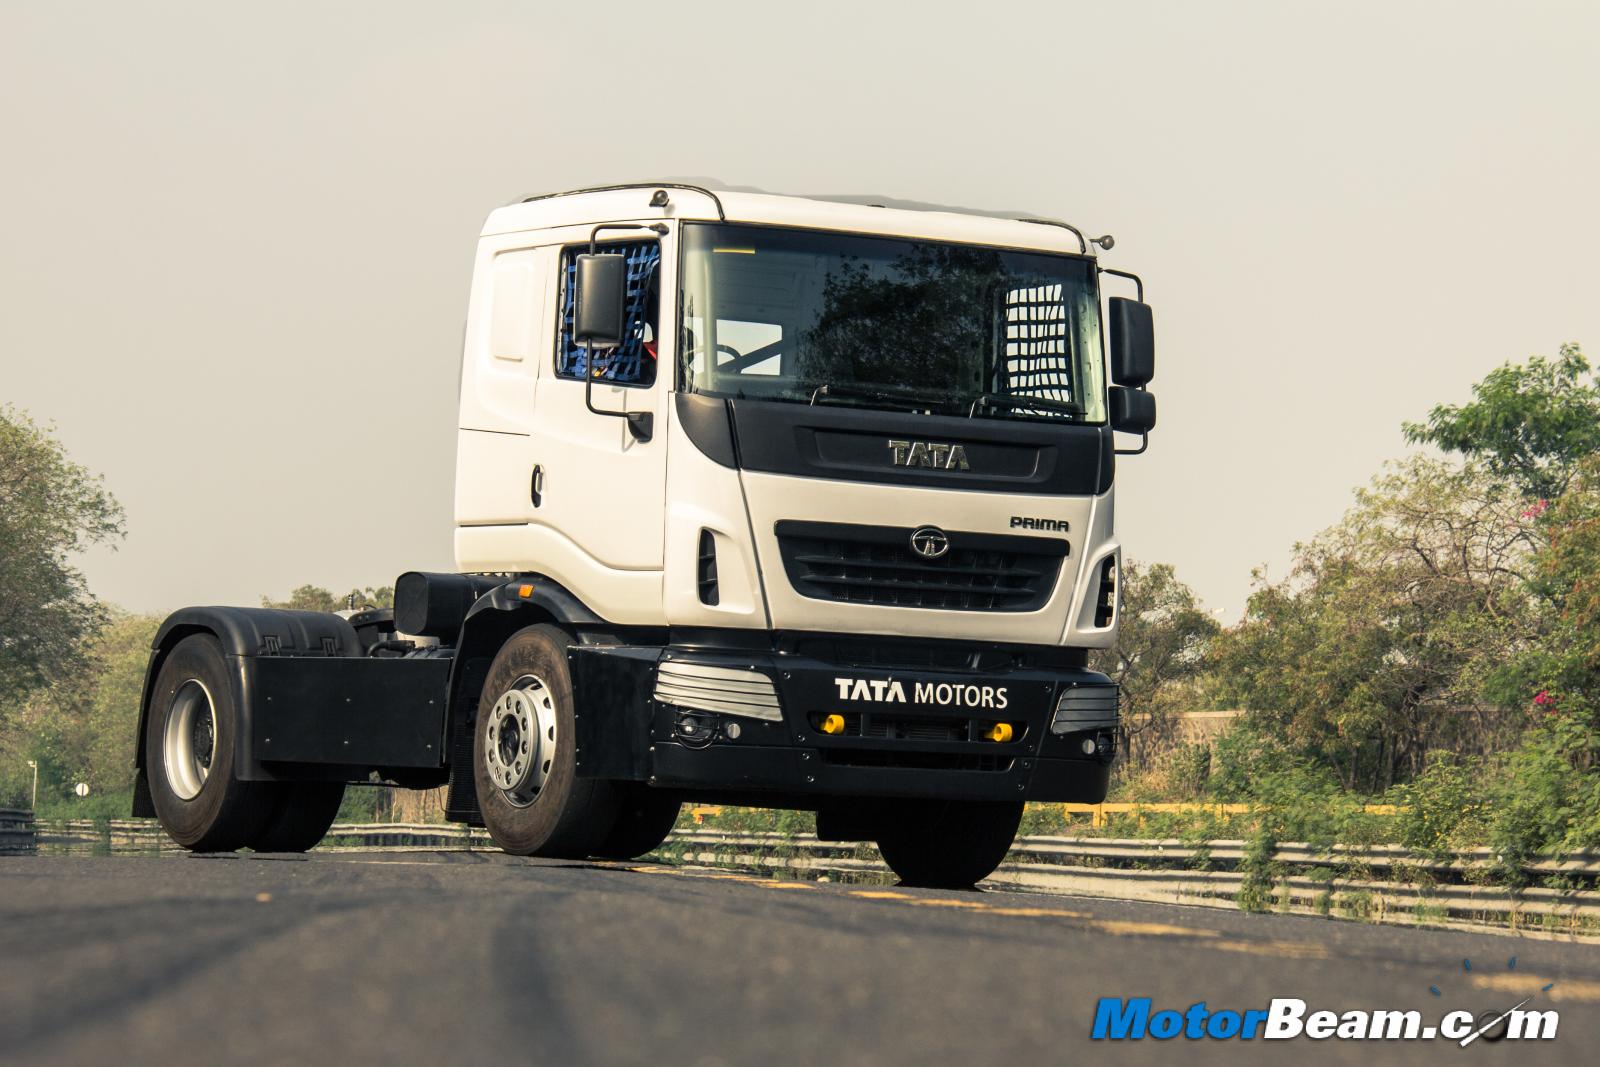 2015 Tata T1 Prima Racing Truck Review